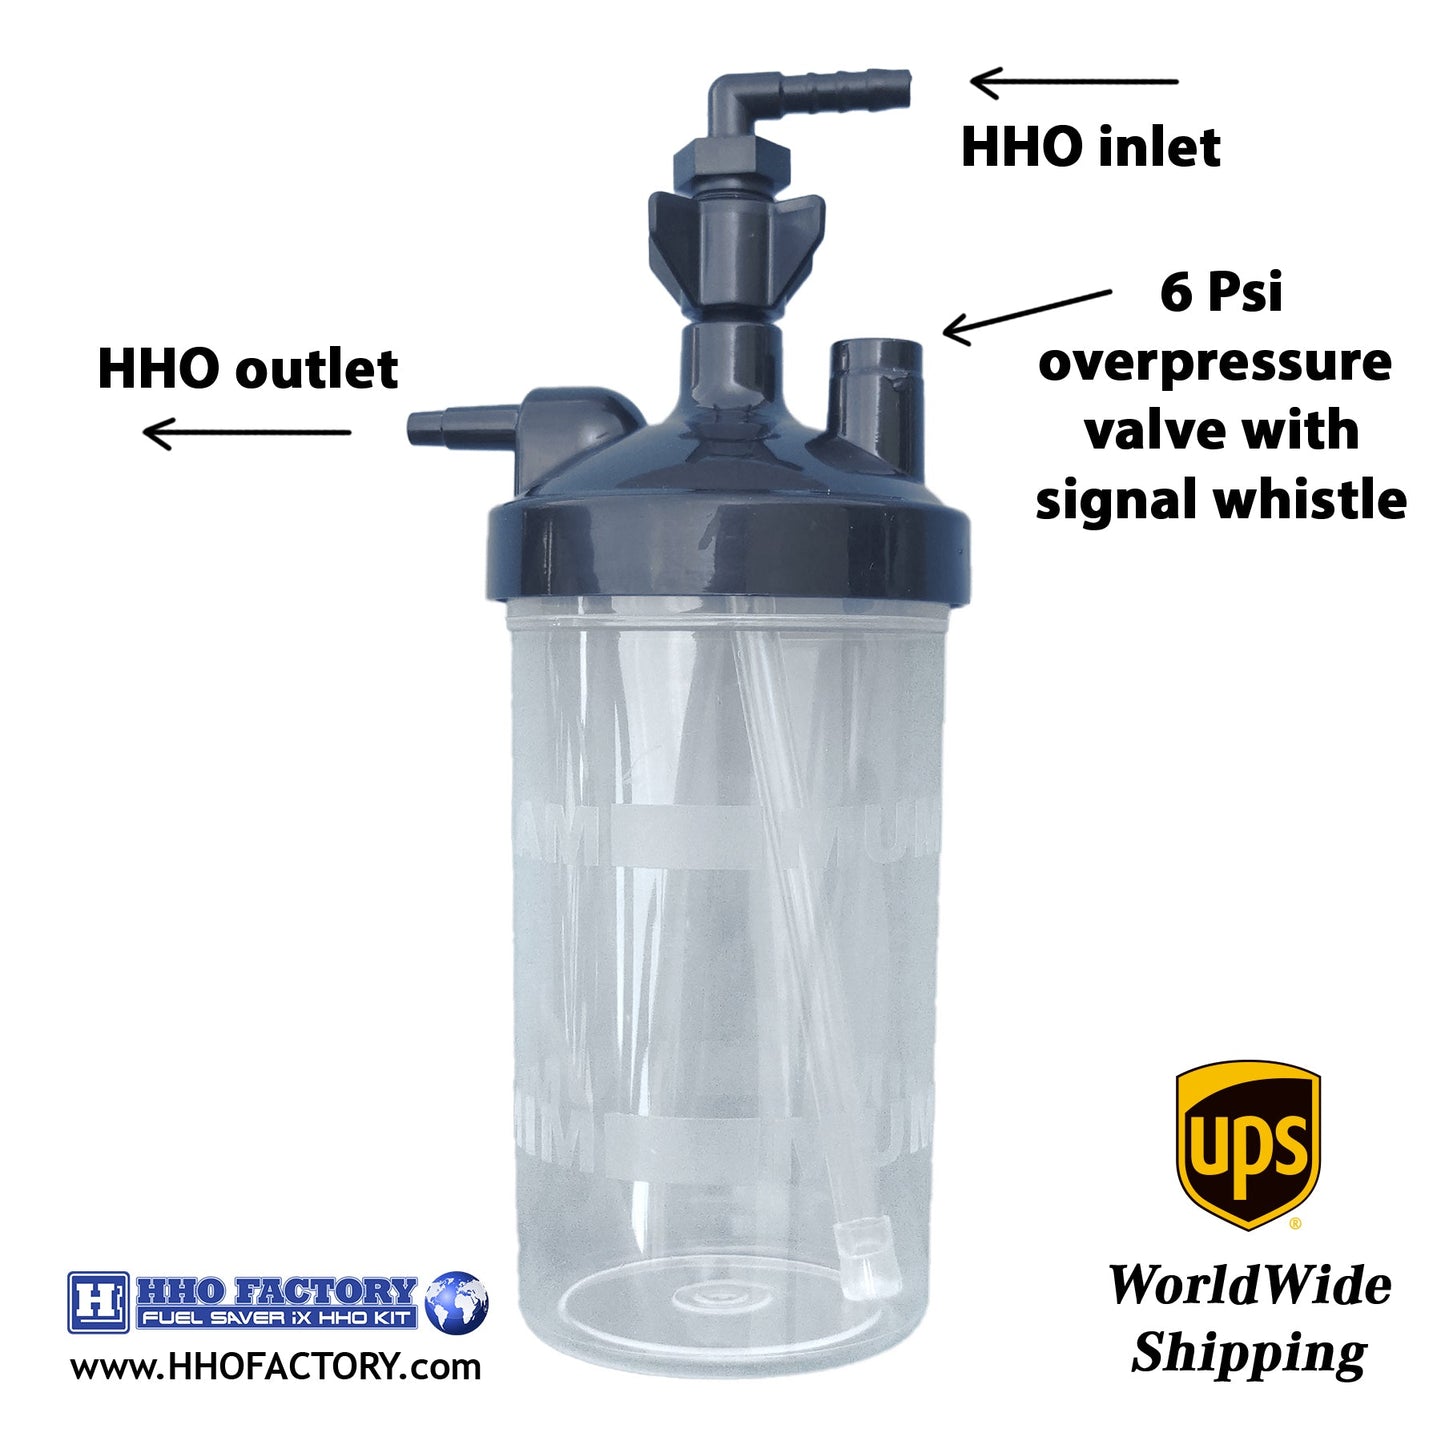 H2 HHO-Kit für Pkw, Transporter, Boote, Stromaggregate, 1.0<5.0-Liter-Motoren iX 160 Wasser als Kraftstoff – www.HHOKIT.ie